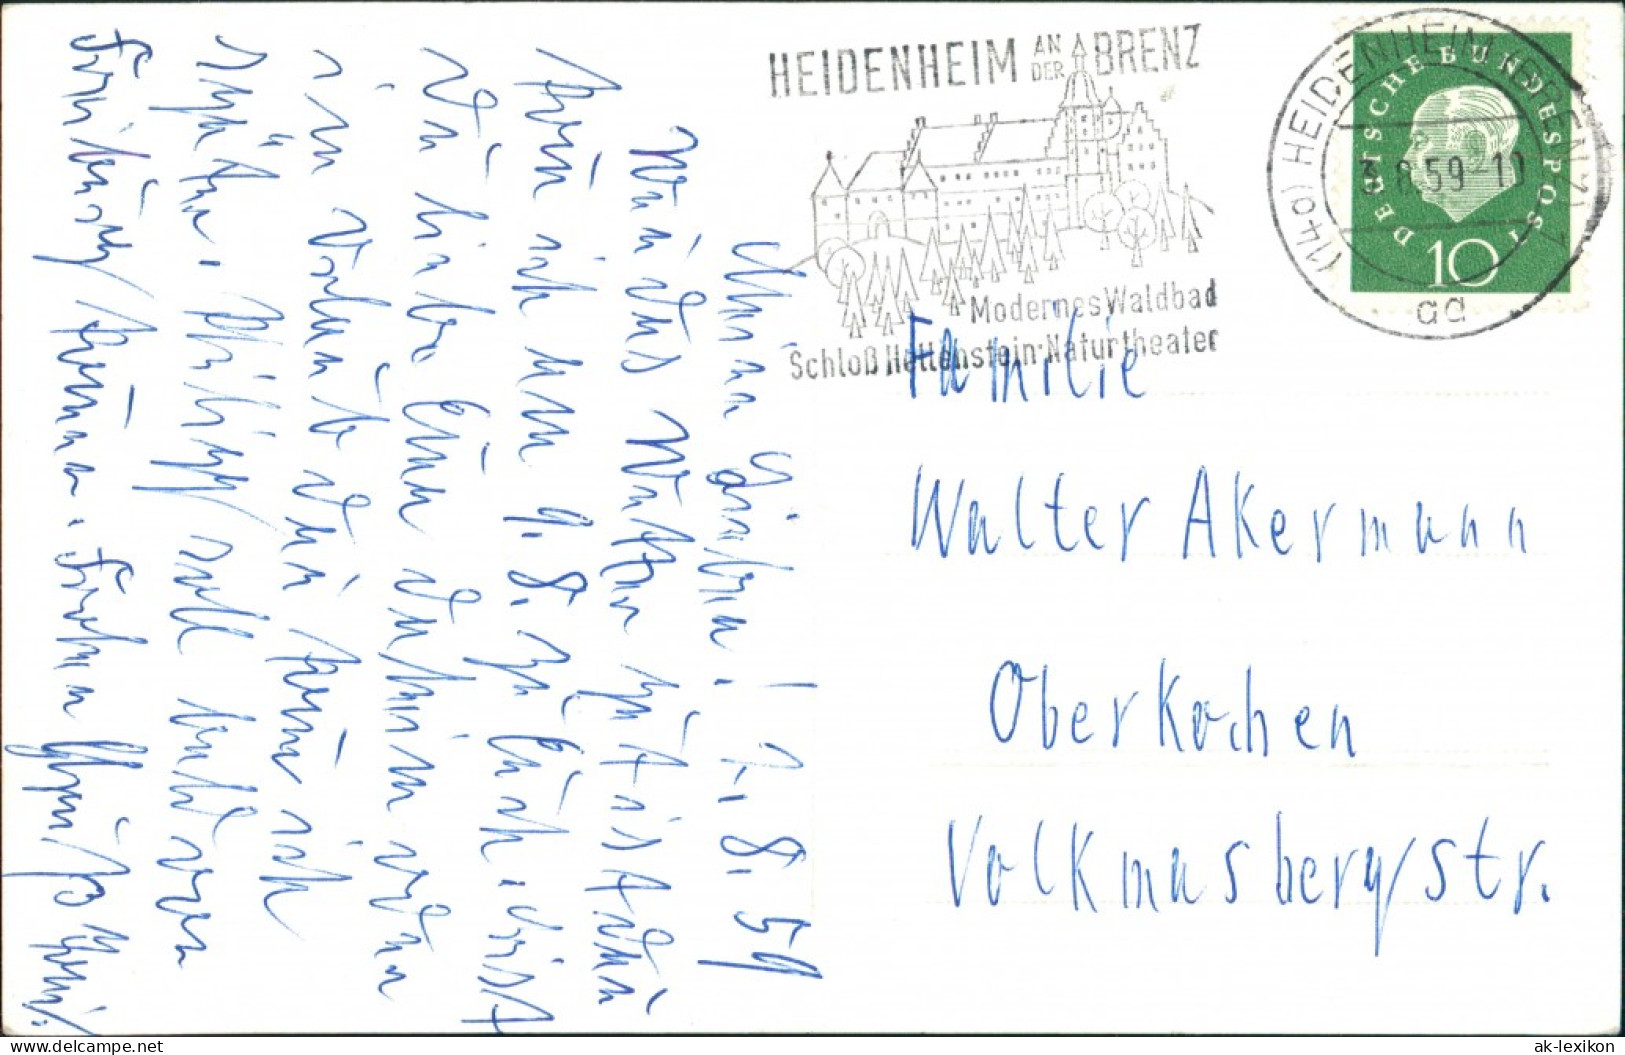 Heidenheim An Der Brenz "handschriftlich Philipp Seubert" 1959 Privatfoto - Heidenheim